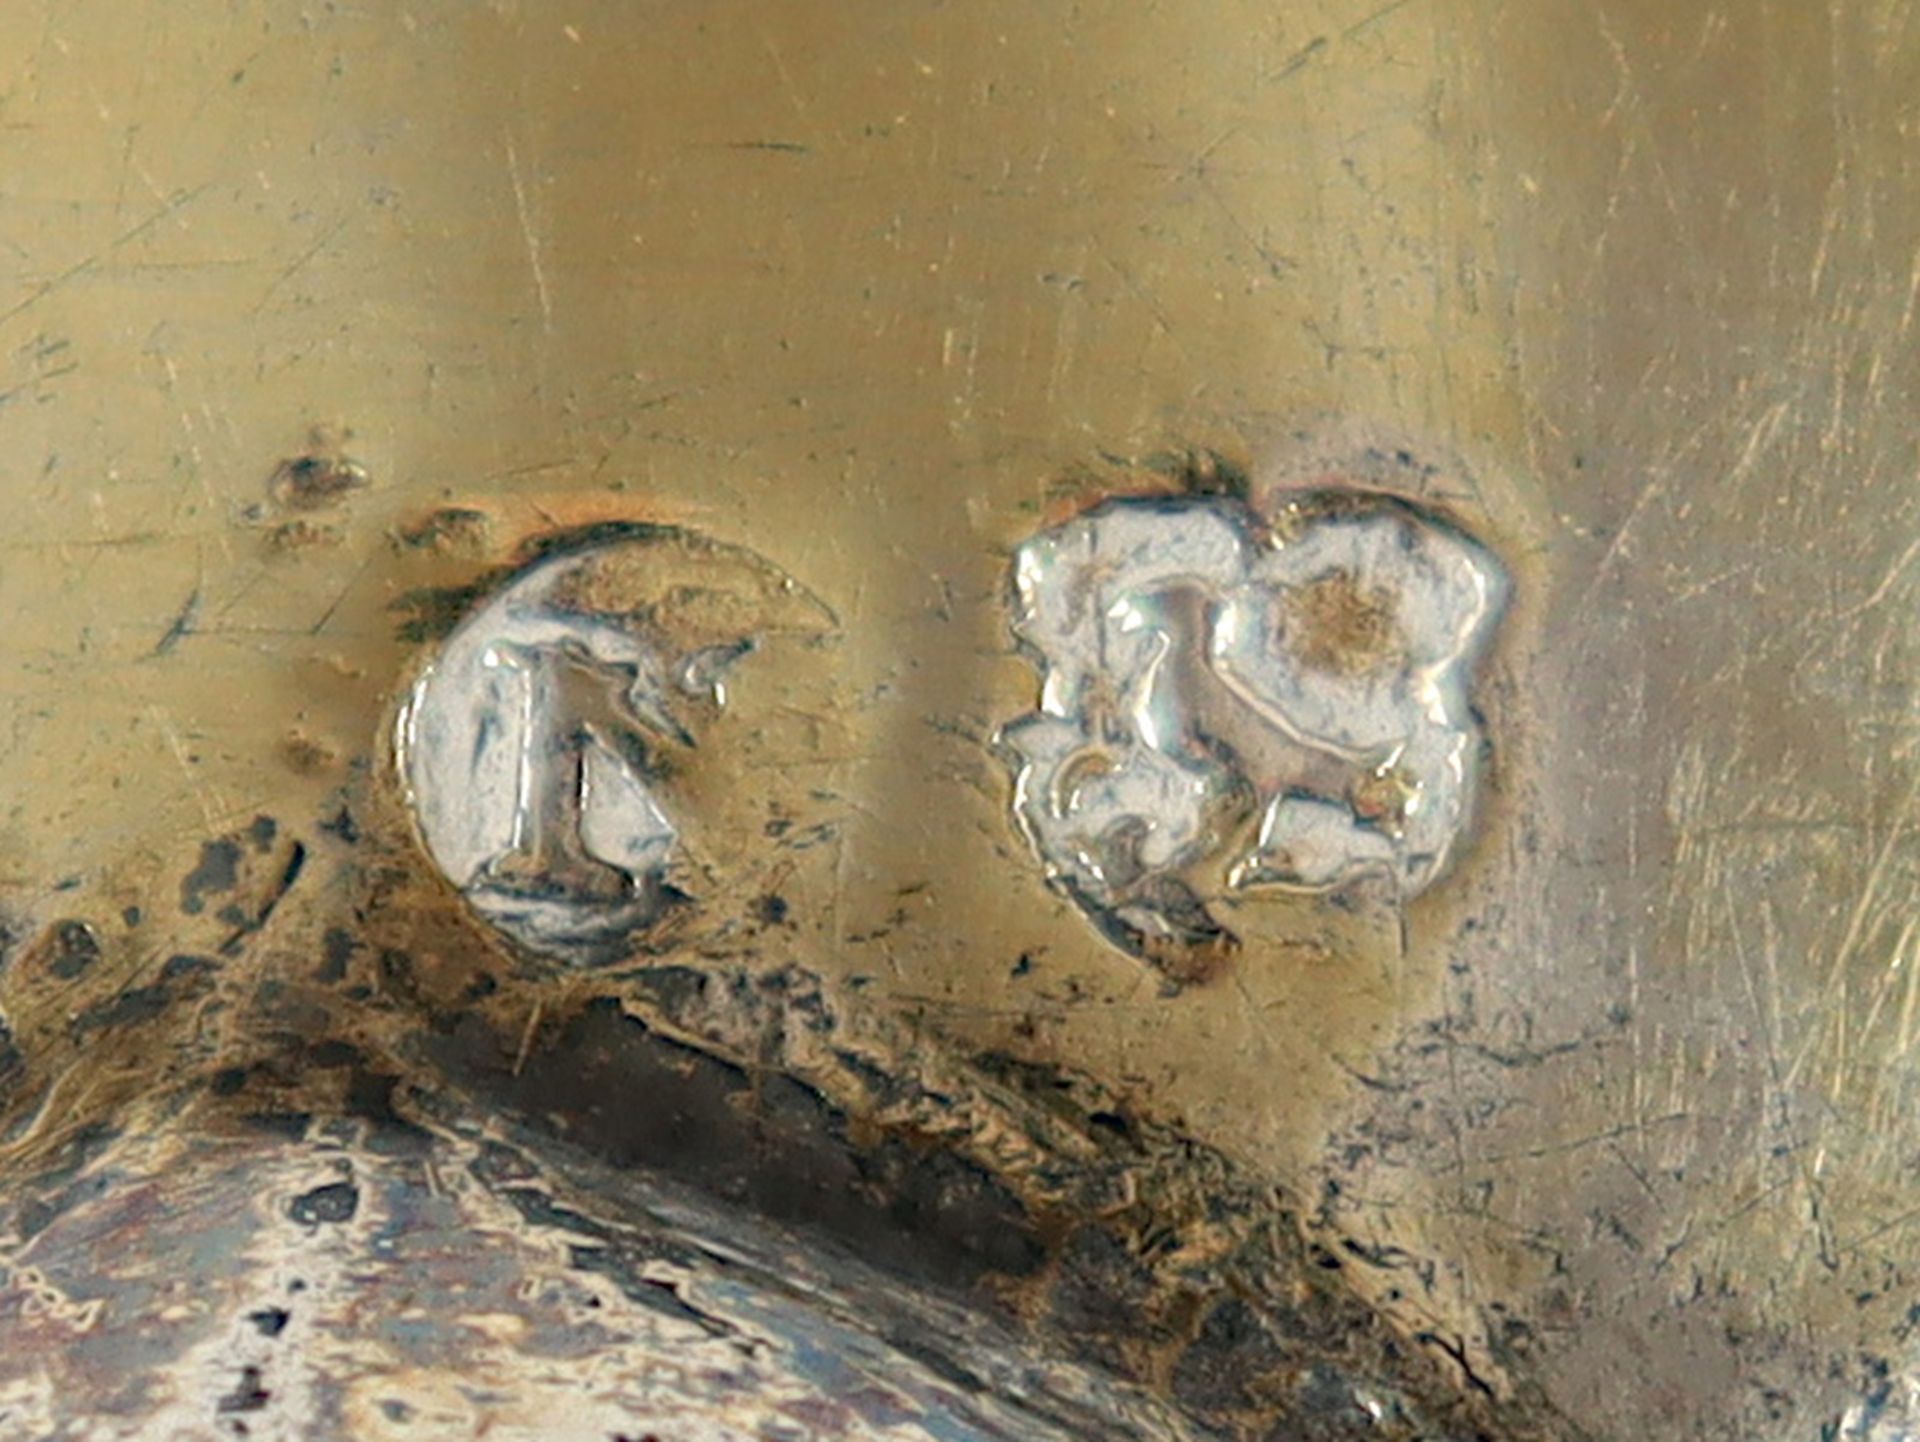 TRAUBENPOKAL, Silber, getrieben und gegossen, vergoldet, gebuckelter Fuß, Schaft wohl verloren, Kup - Bild 4 aus 4